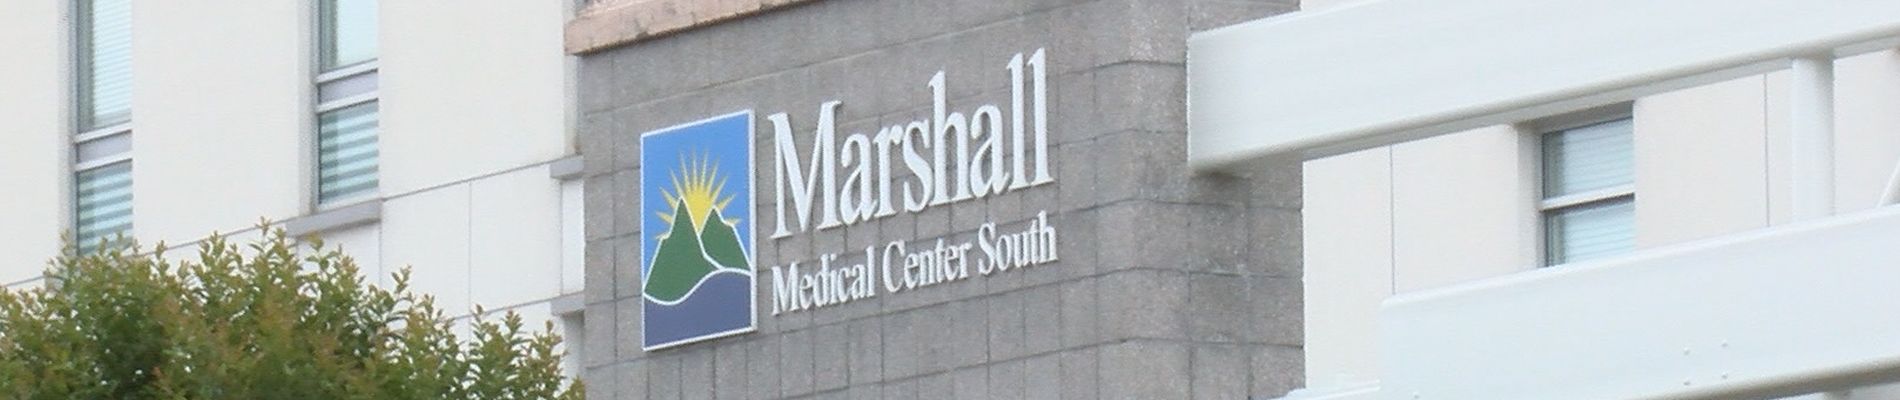 Marshal medical center